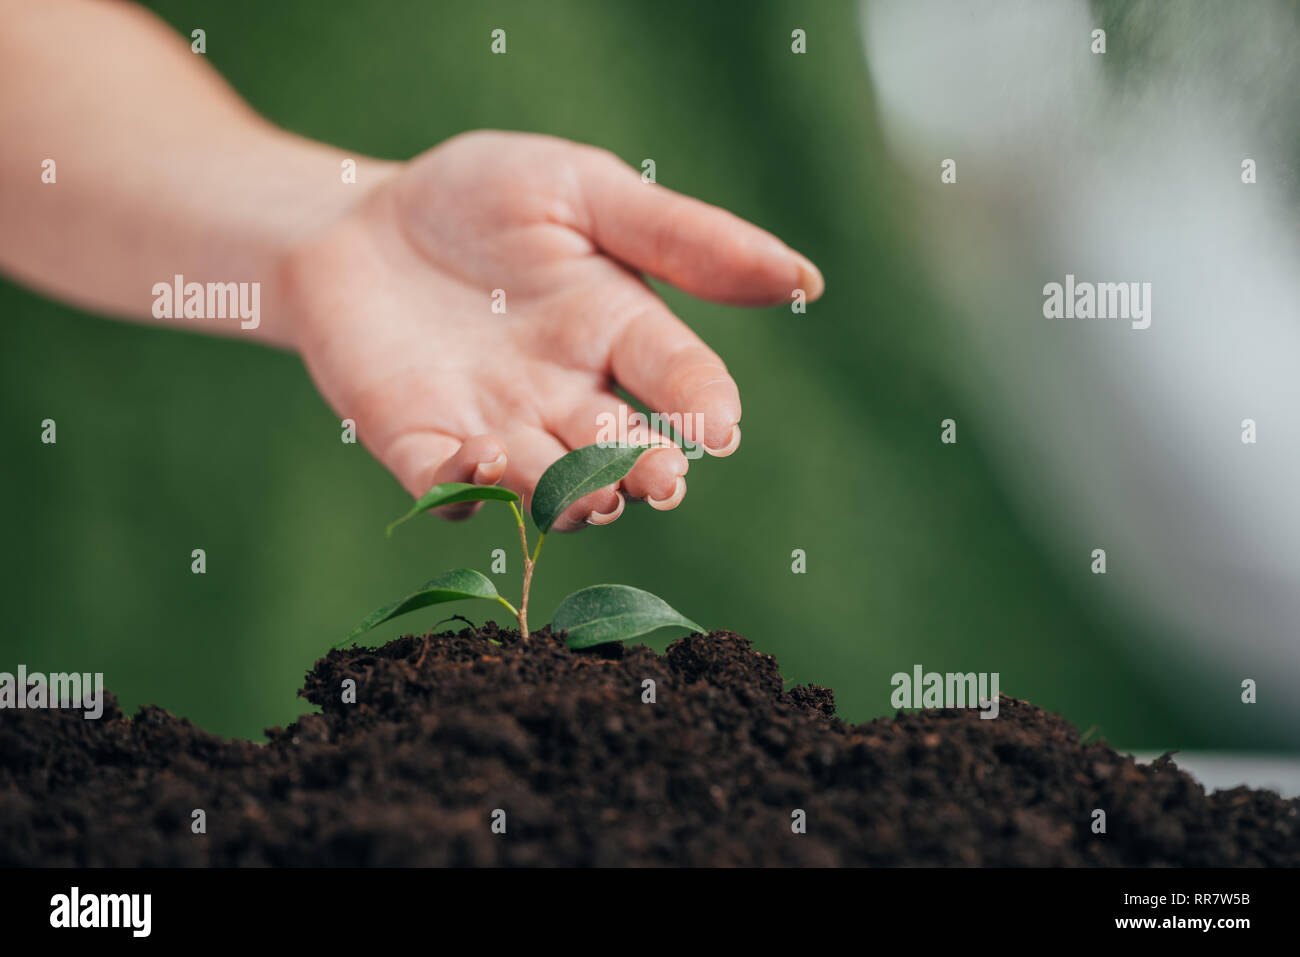 Selektiver Fokus der Frau berühren junge Pflanze wächst in Boden auf unscharfen Hintergrund, Tag der Erde Konzept Stockfoto